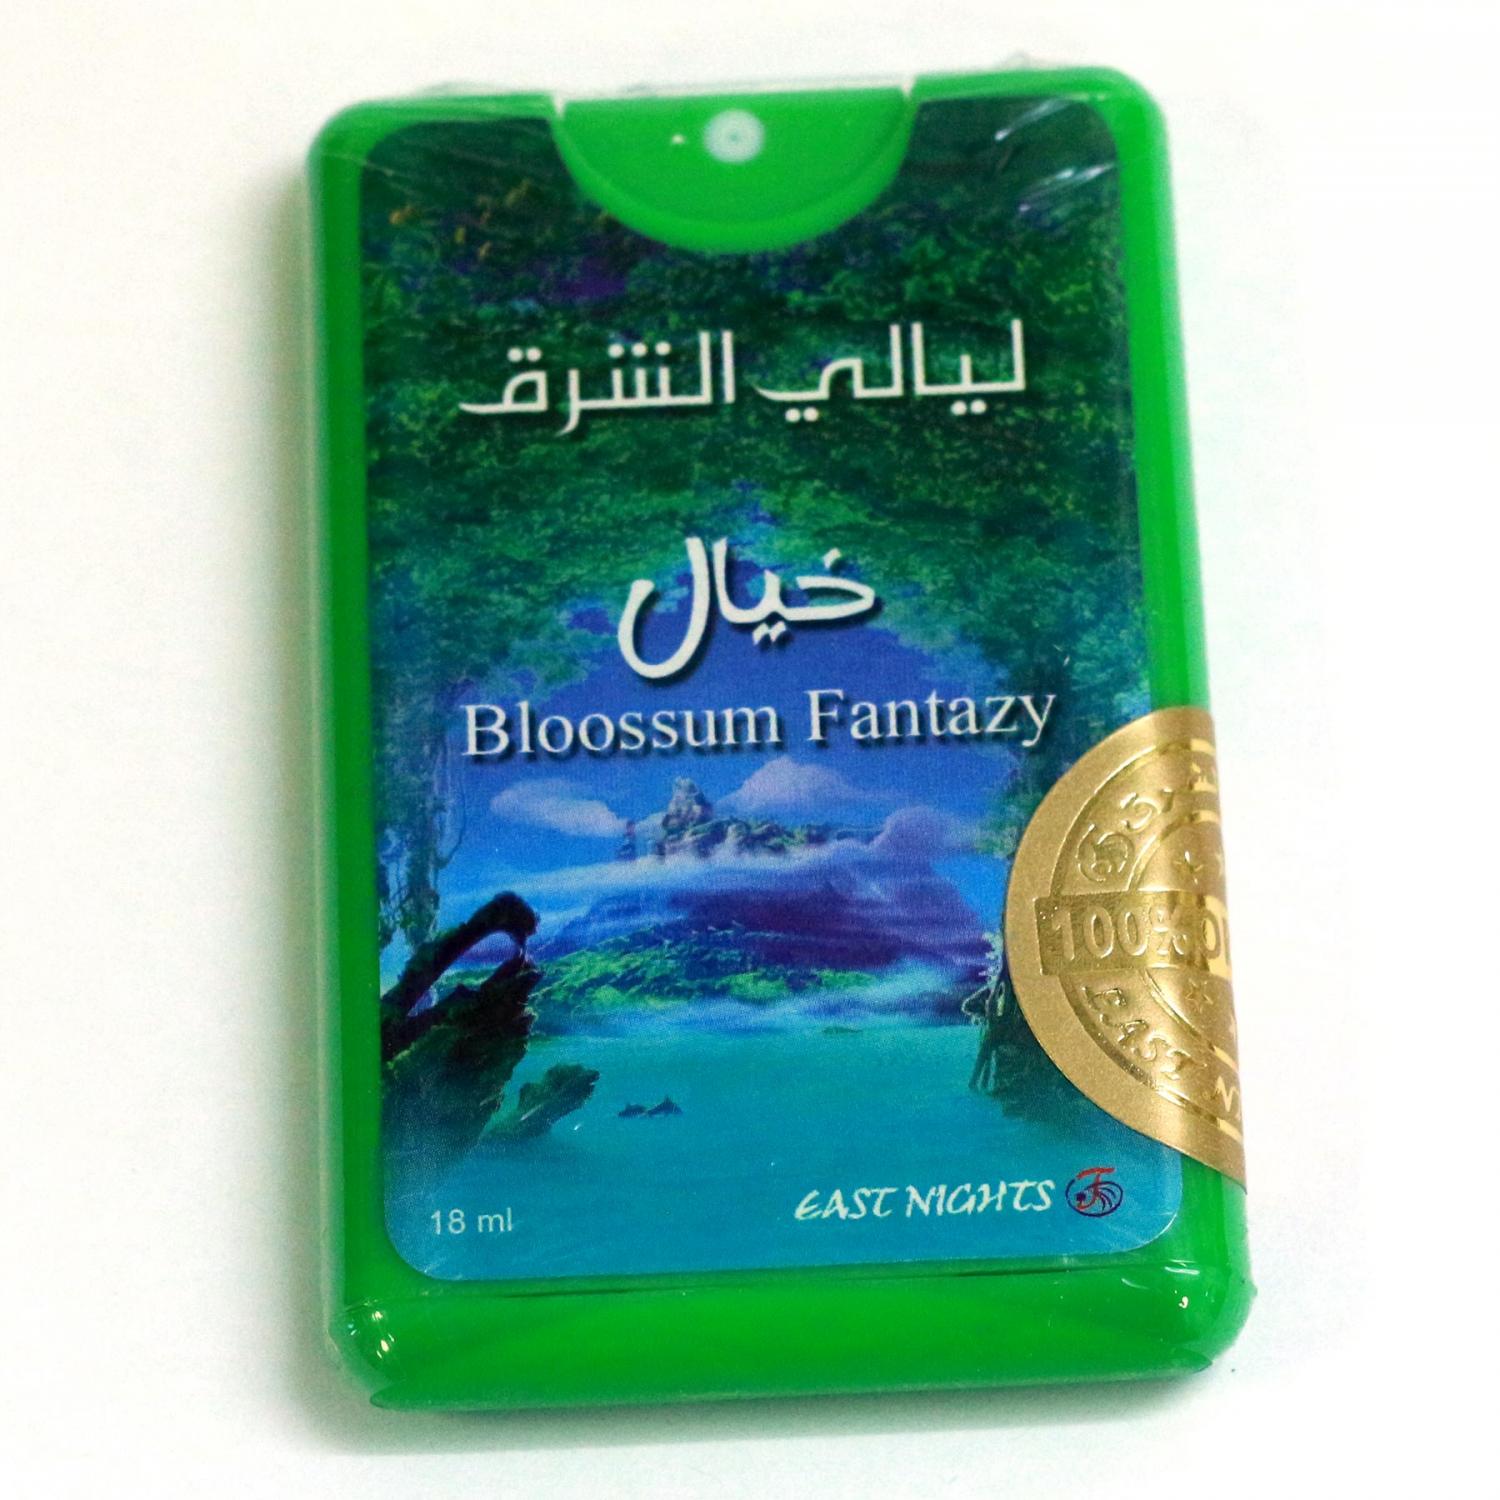 Масляные духи в упаковке спрей-покет Blossom Fantazy